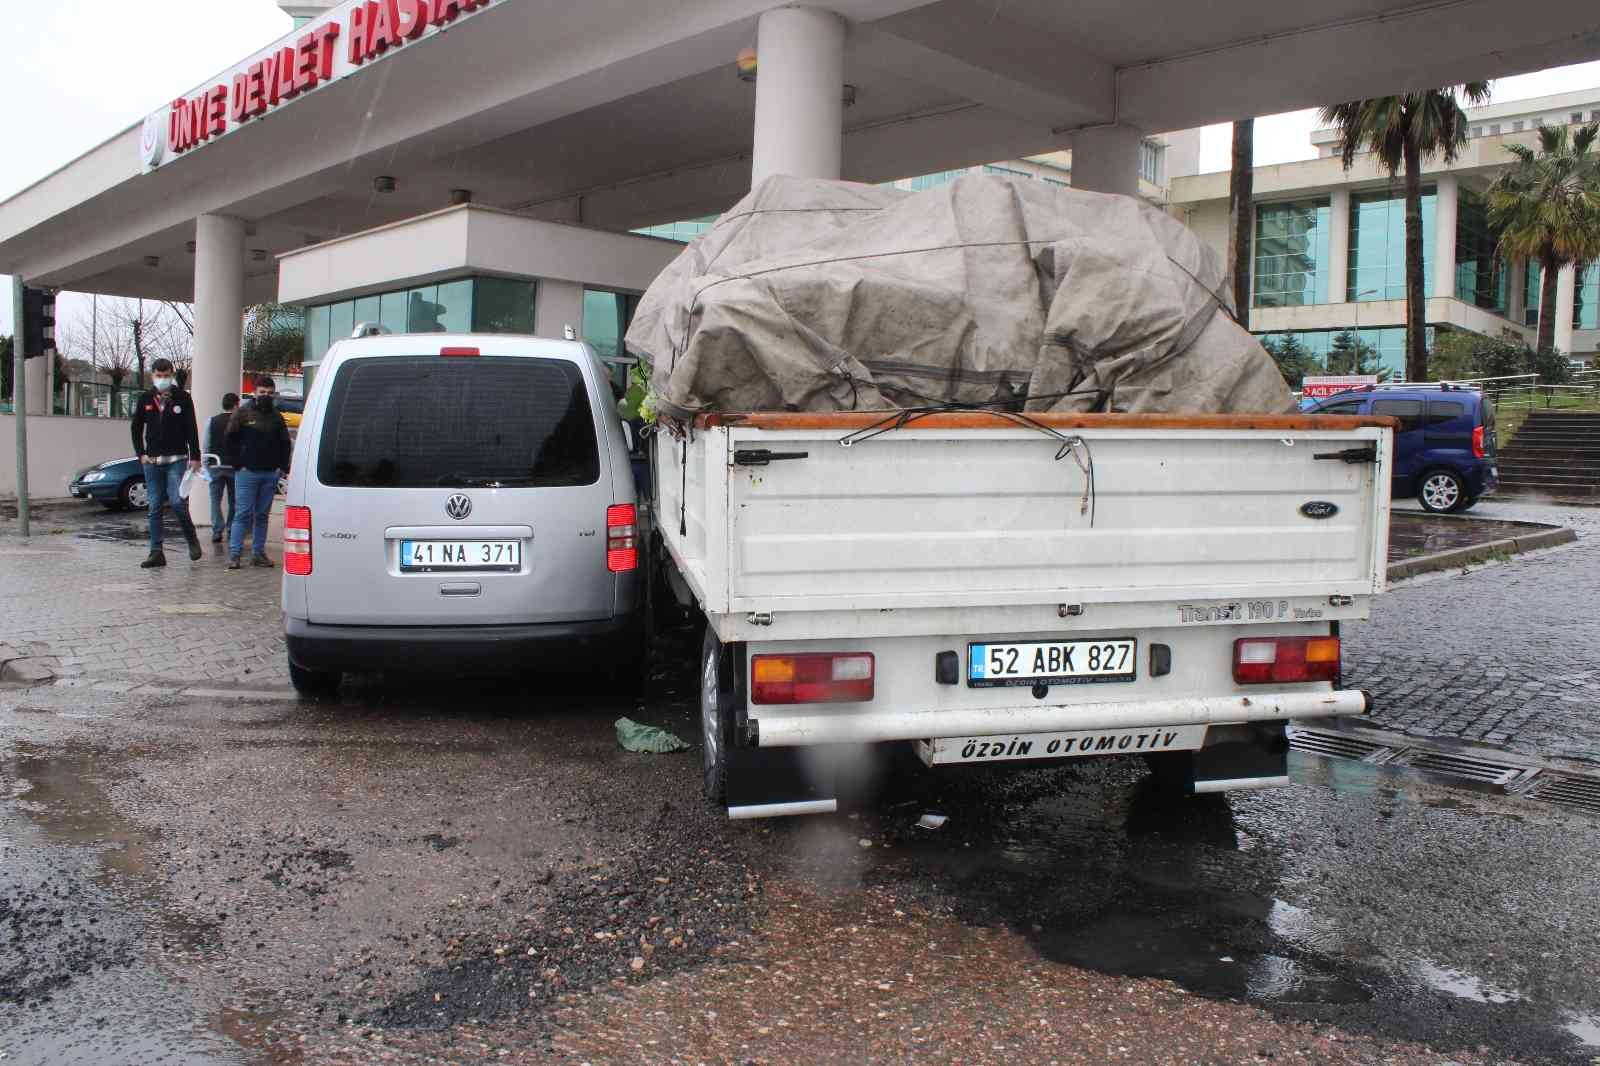 Ordu'da trafik kazası: Araçlar hastane girişindeki beton direğe çarparak durabildiler
